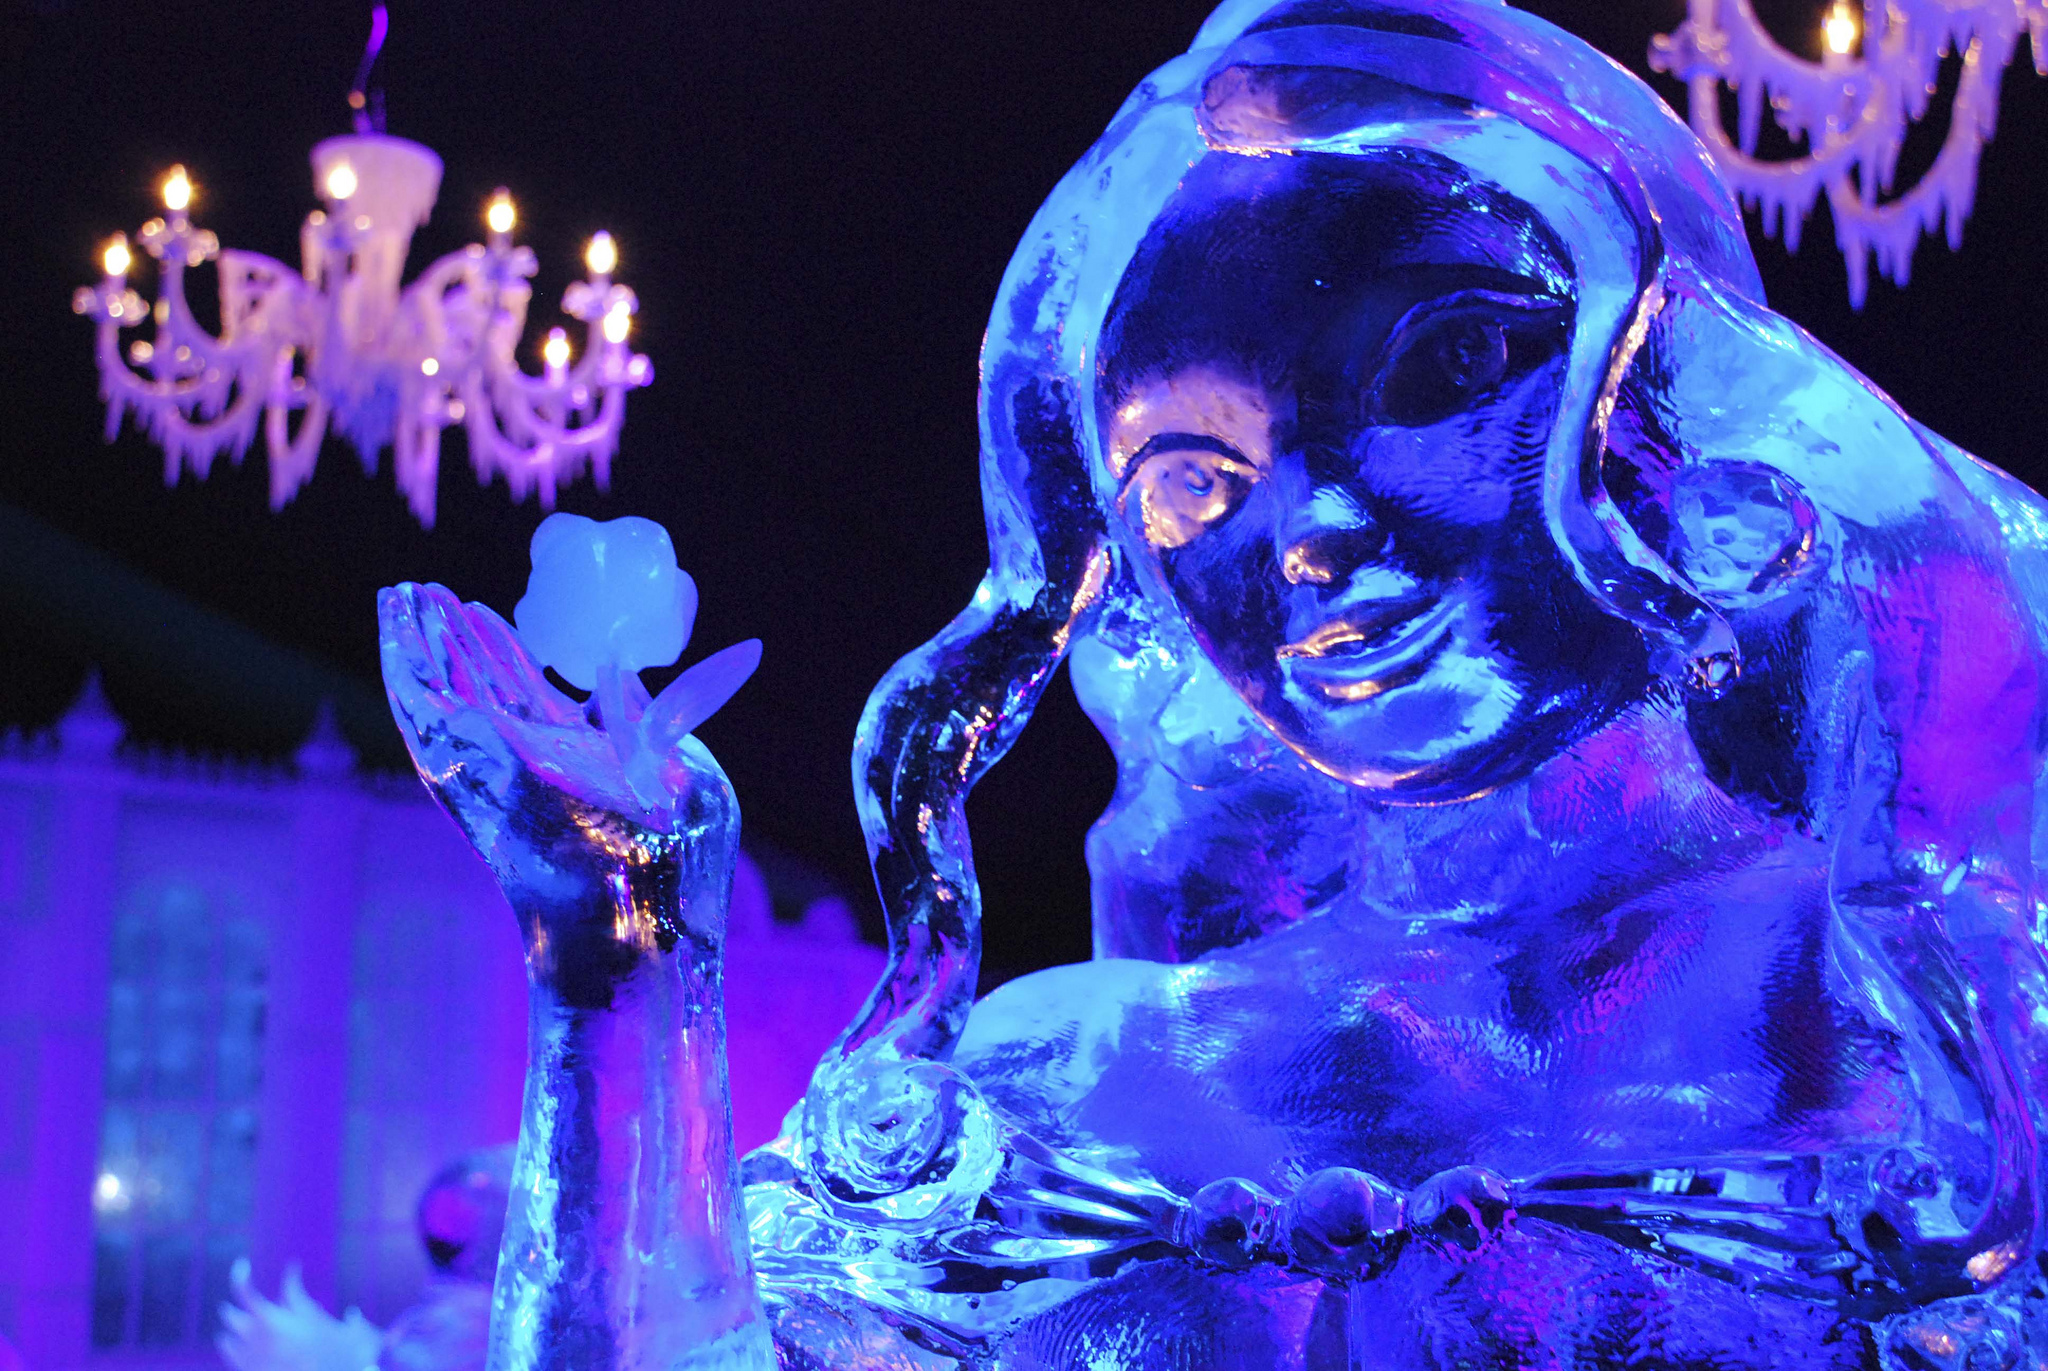 Sculpture sur glace au festival de Bruges